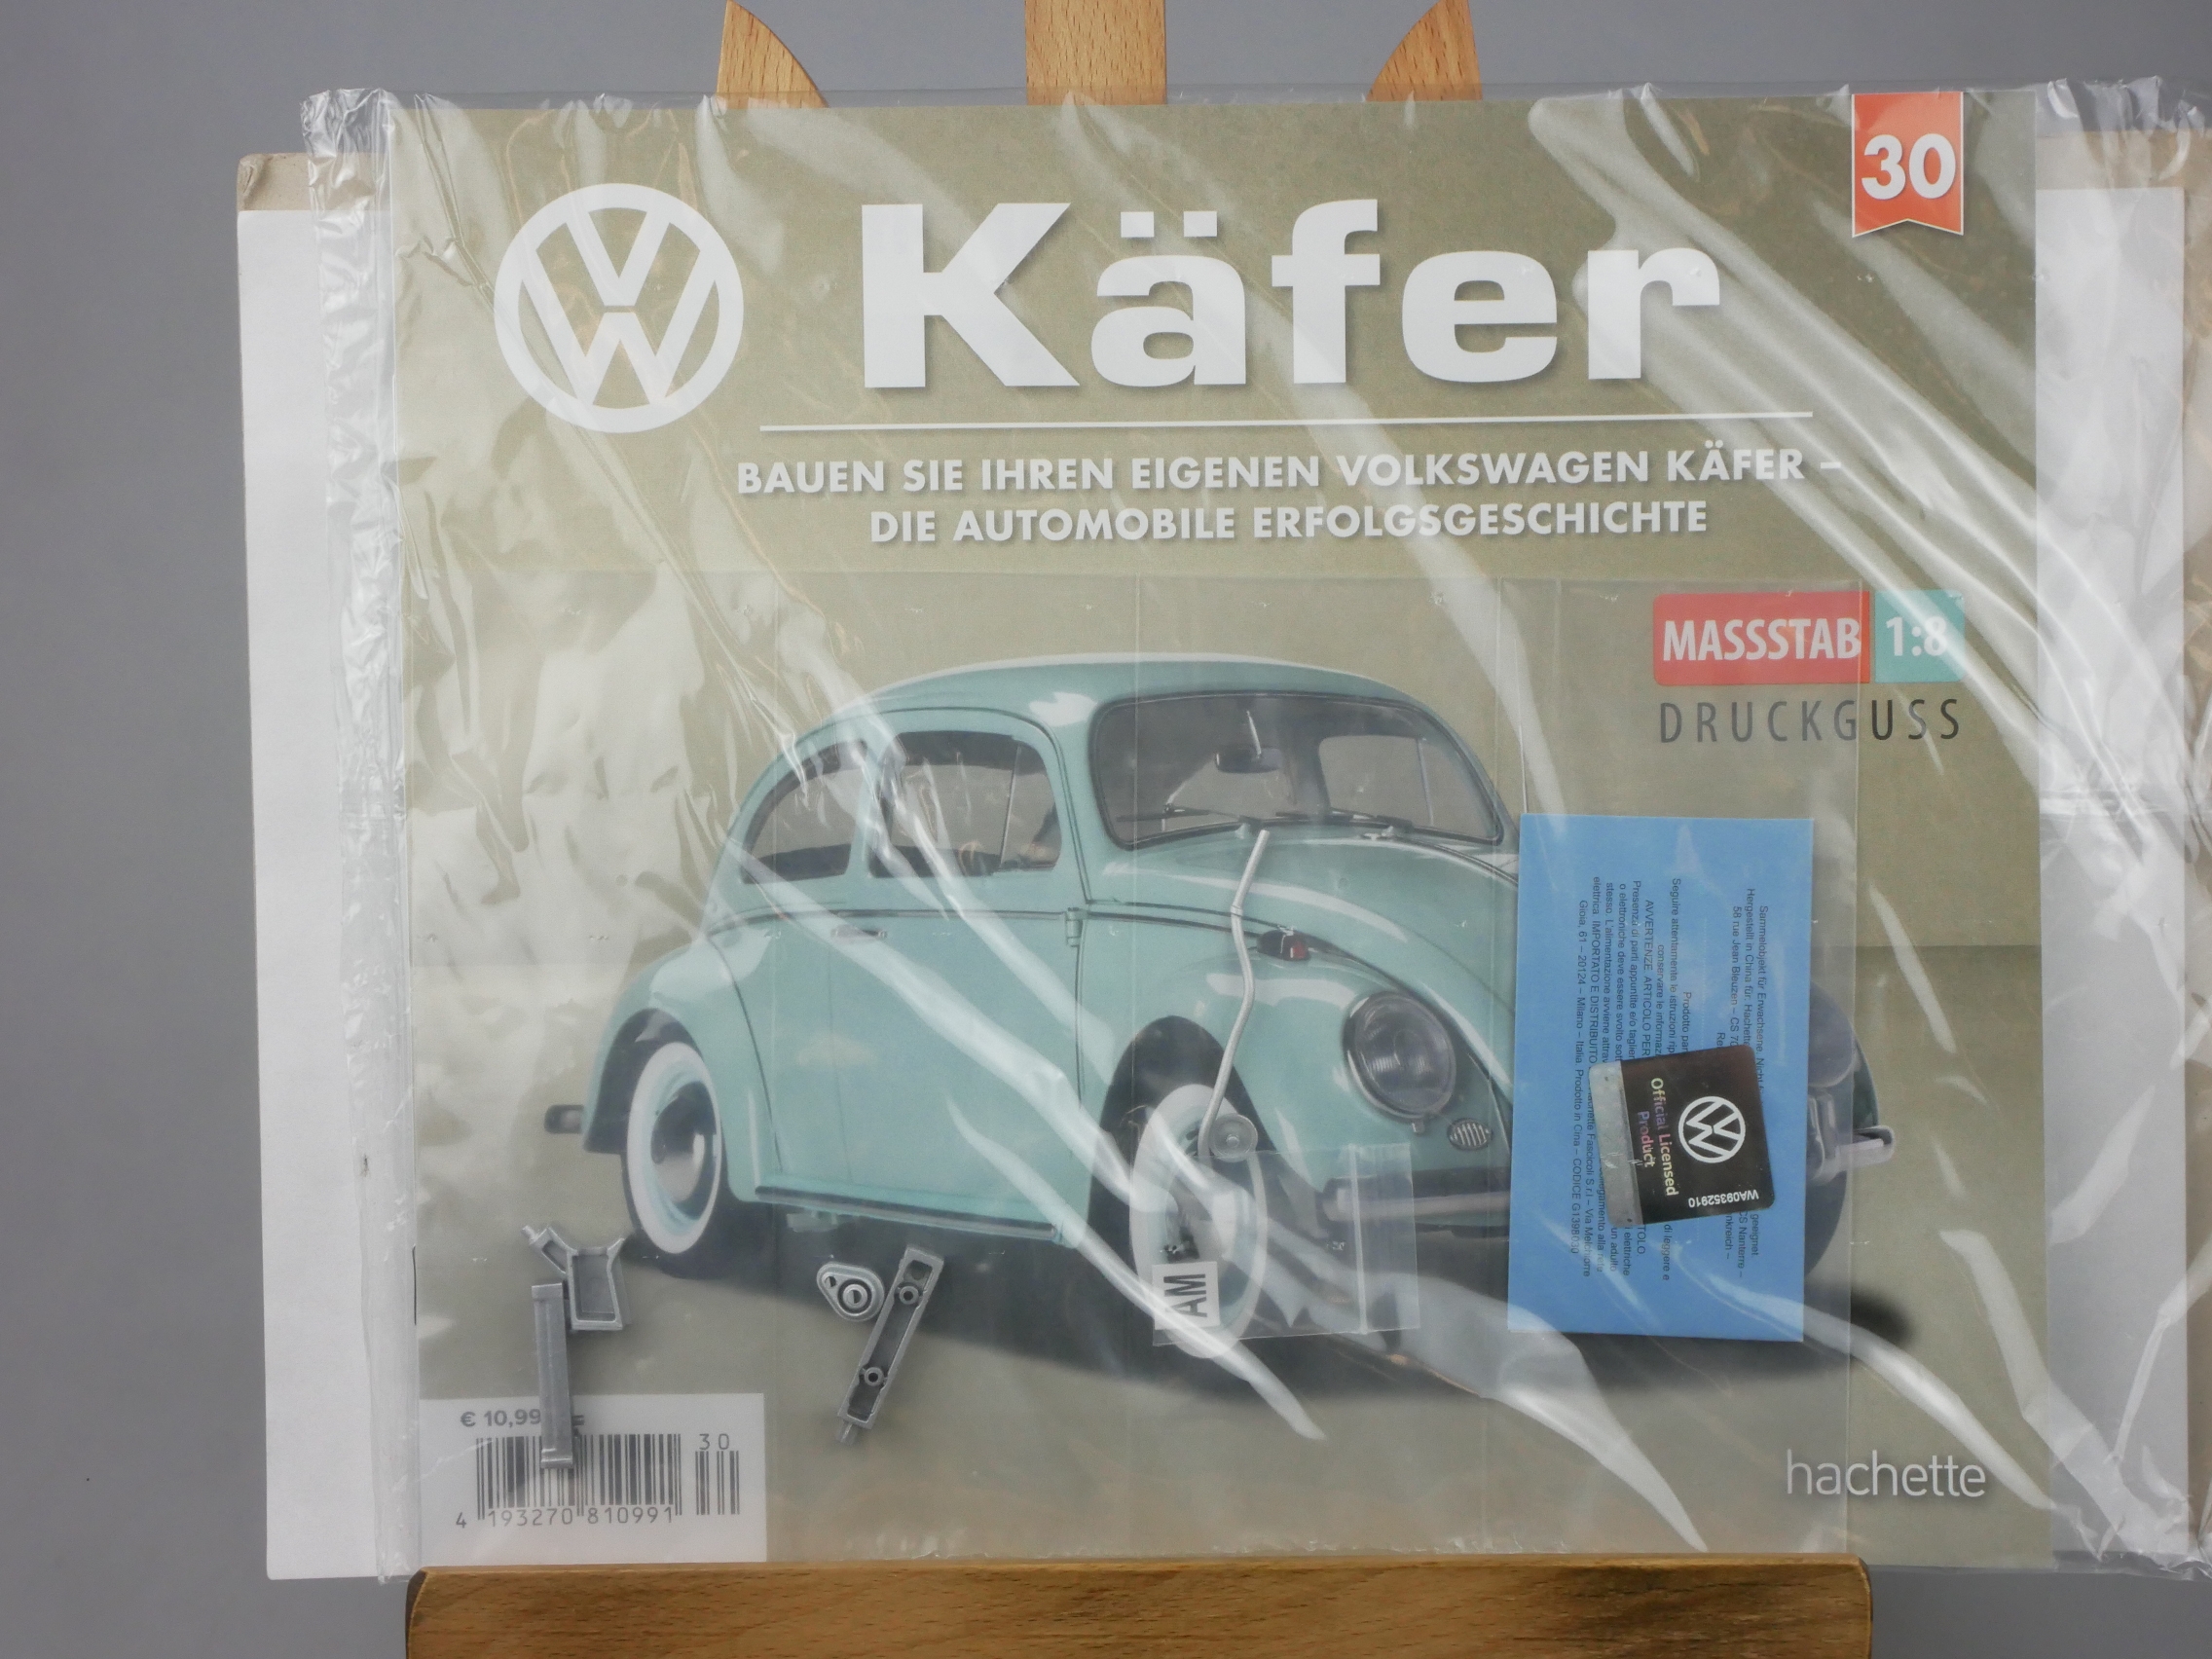  Ausgabe 30 Volkswagen VW Käfer 1/8 Hachette - 126397